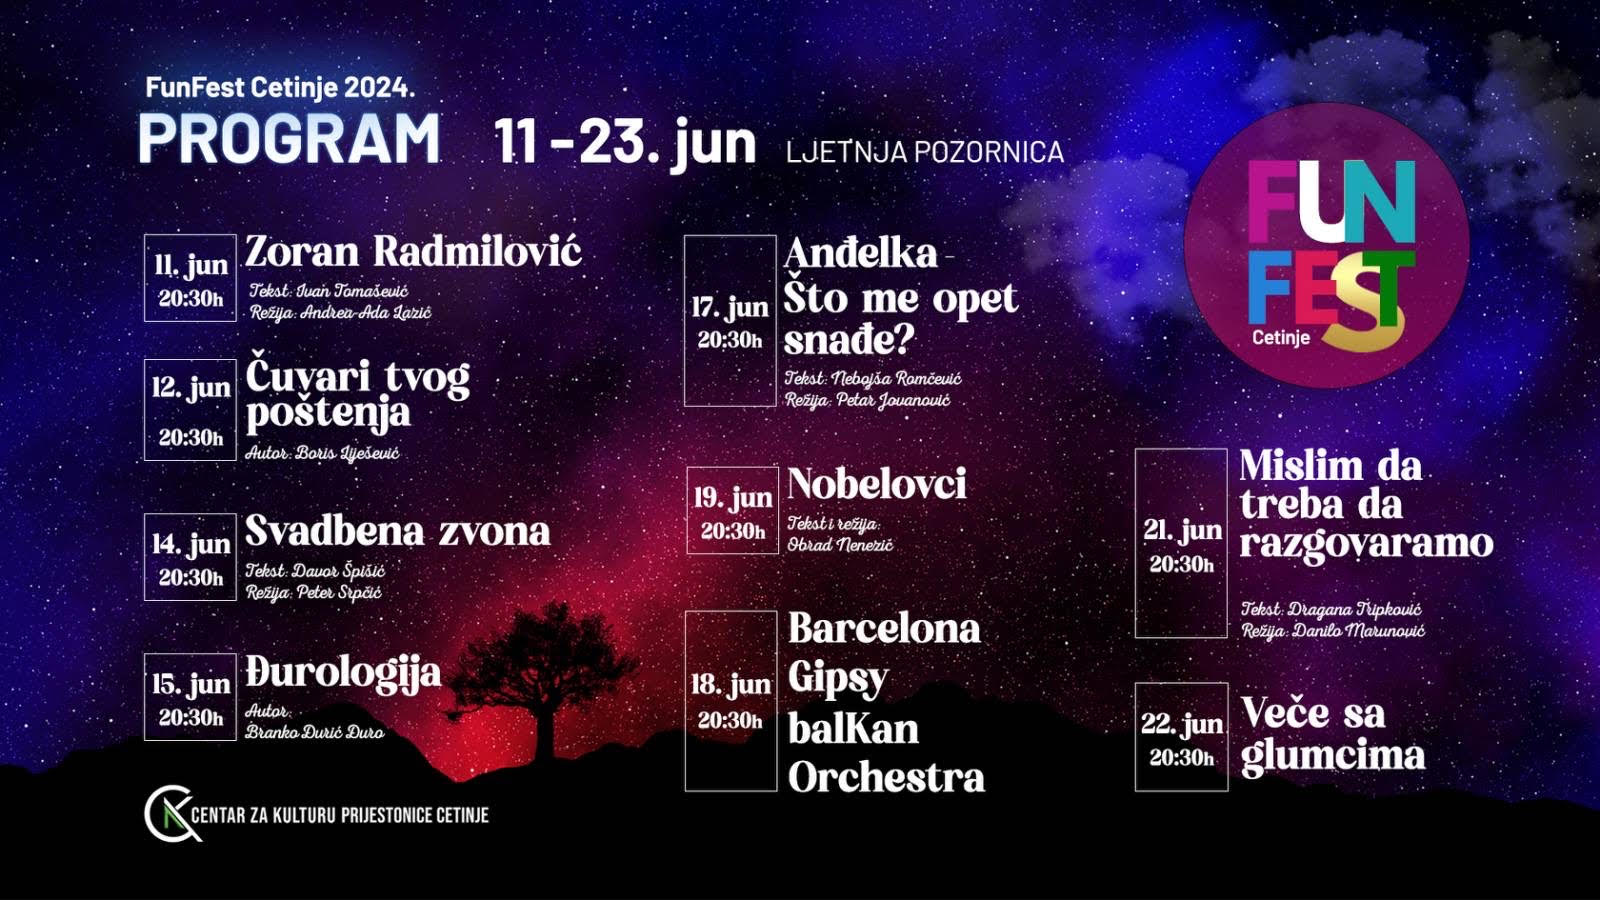 Svadbena zvona gostuju u Kruševcu i na festivalu u Cetinju